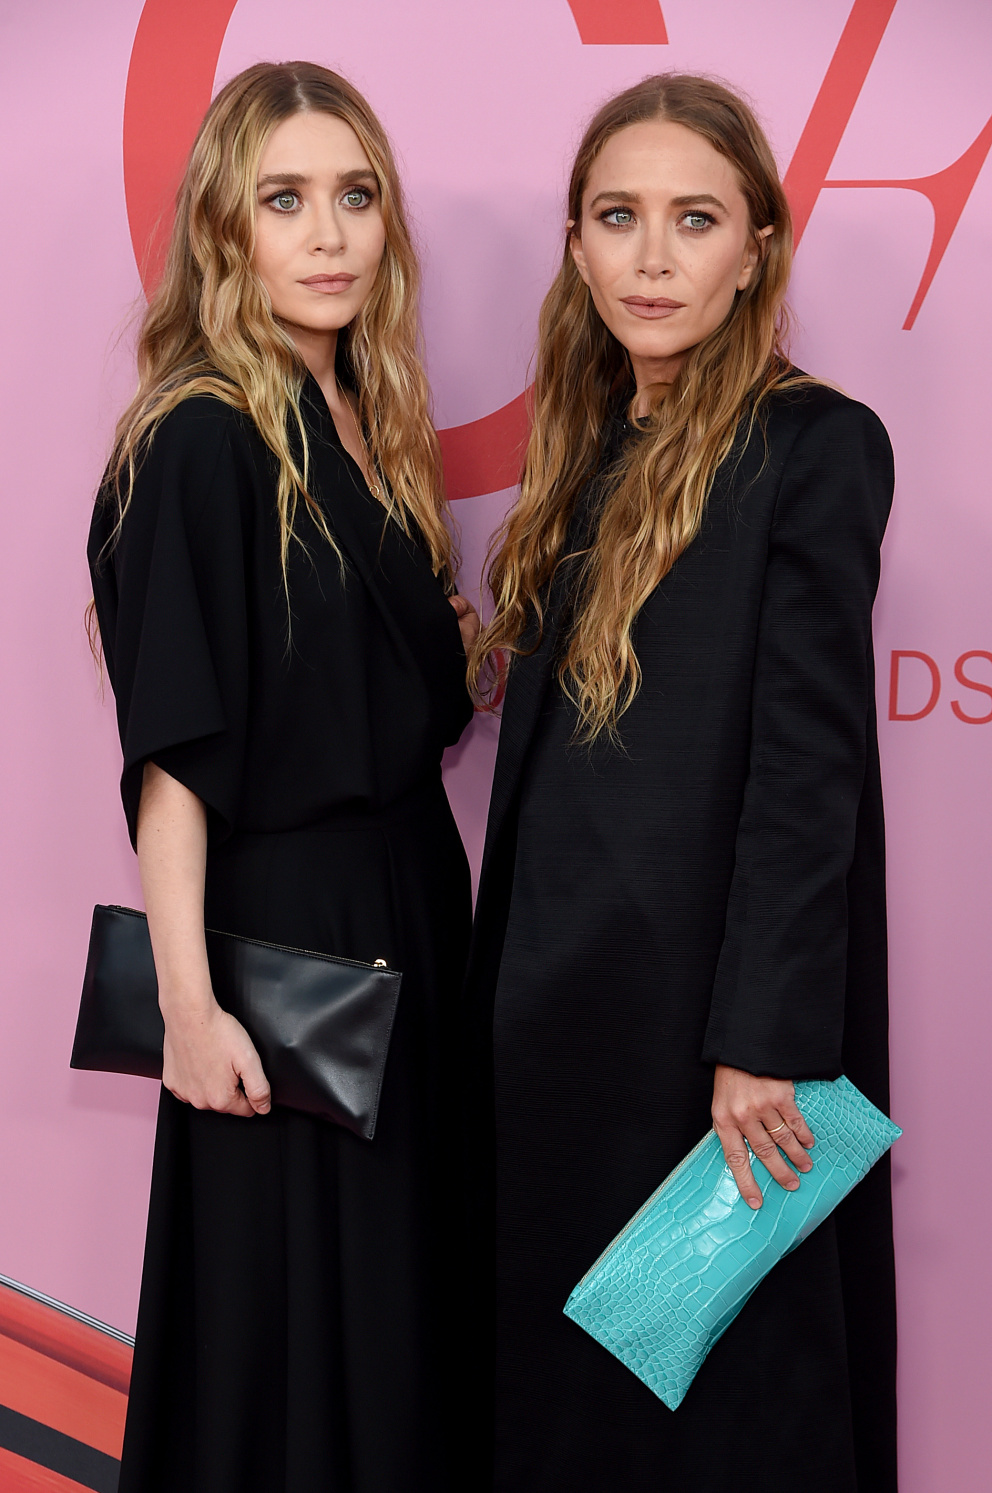 Mary-Kate a Ashley Olsen dnes

Dnes jsou dvojčata Olsenova známá něčím jiným: módou. Staly se módními návrhářkami pro značku The Row. U herectví však zůstala jejich mladší sestra Elizabeth, která si získala své místo v sérii Marvelových filmů.
